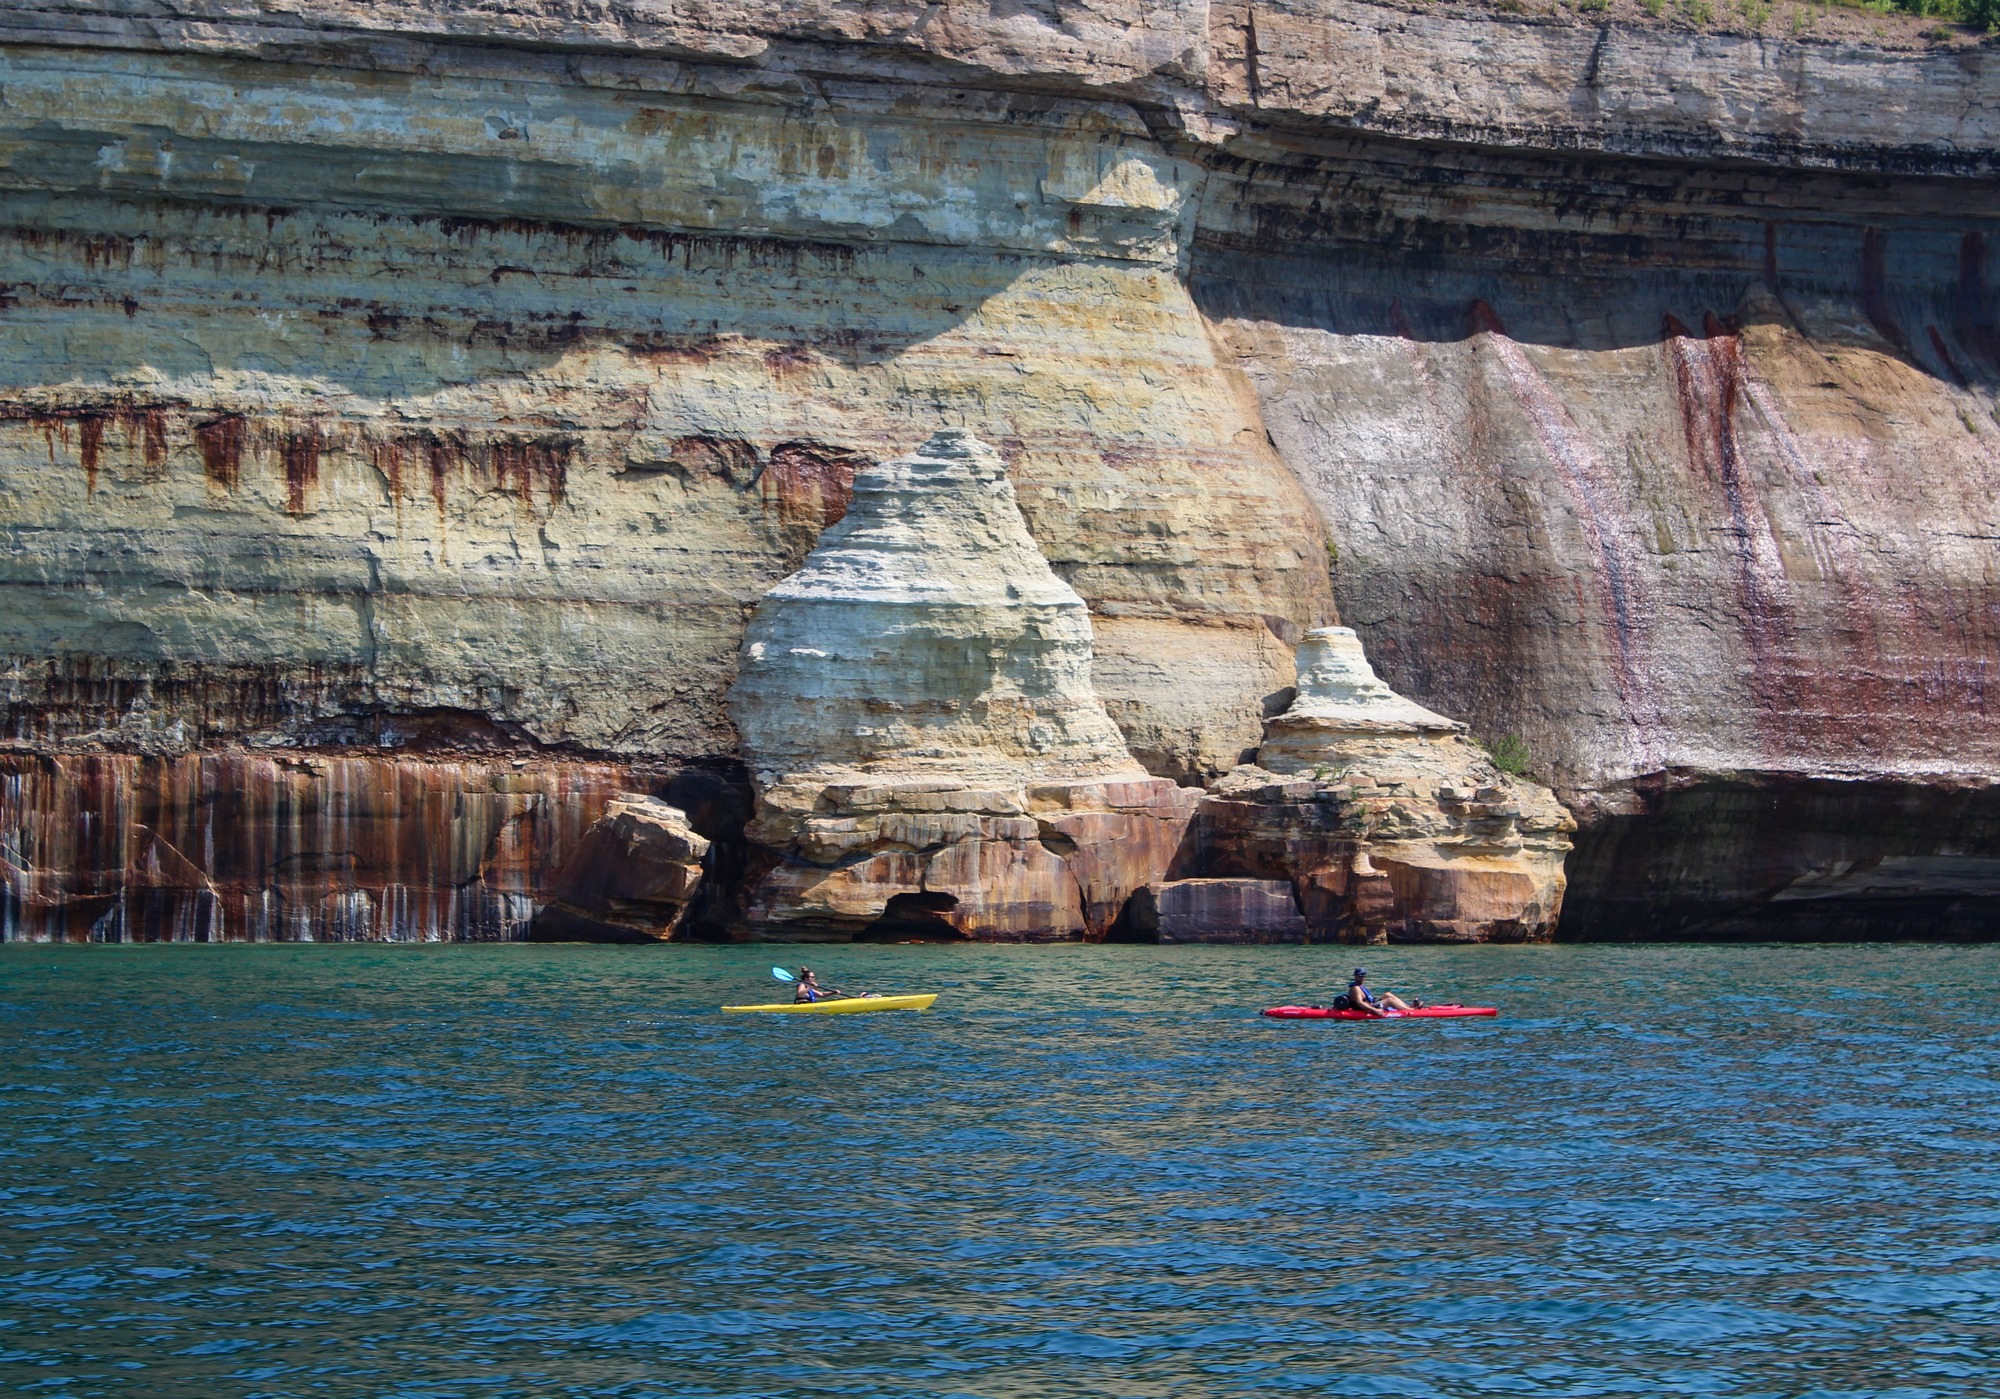 Kayakers paddling along tall cliff faces